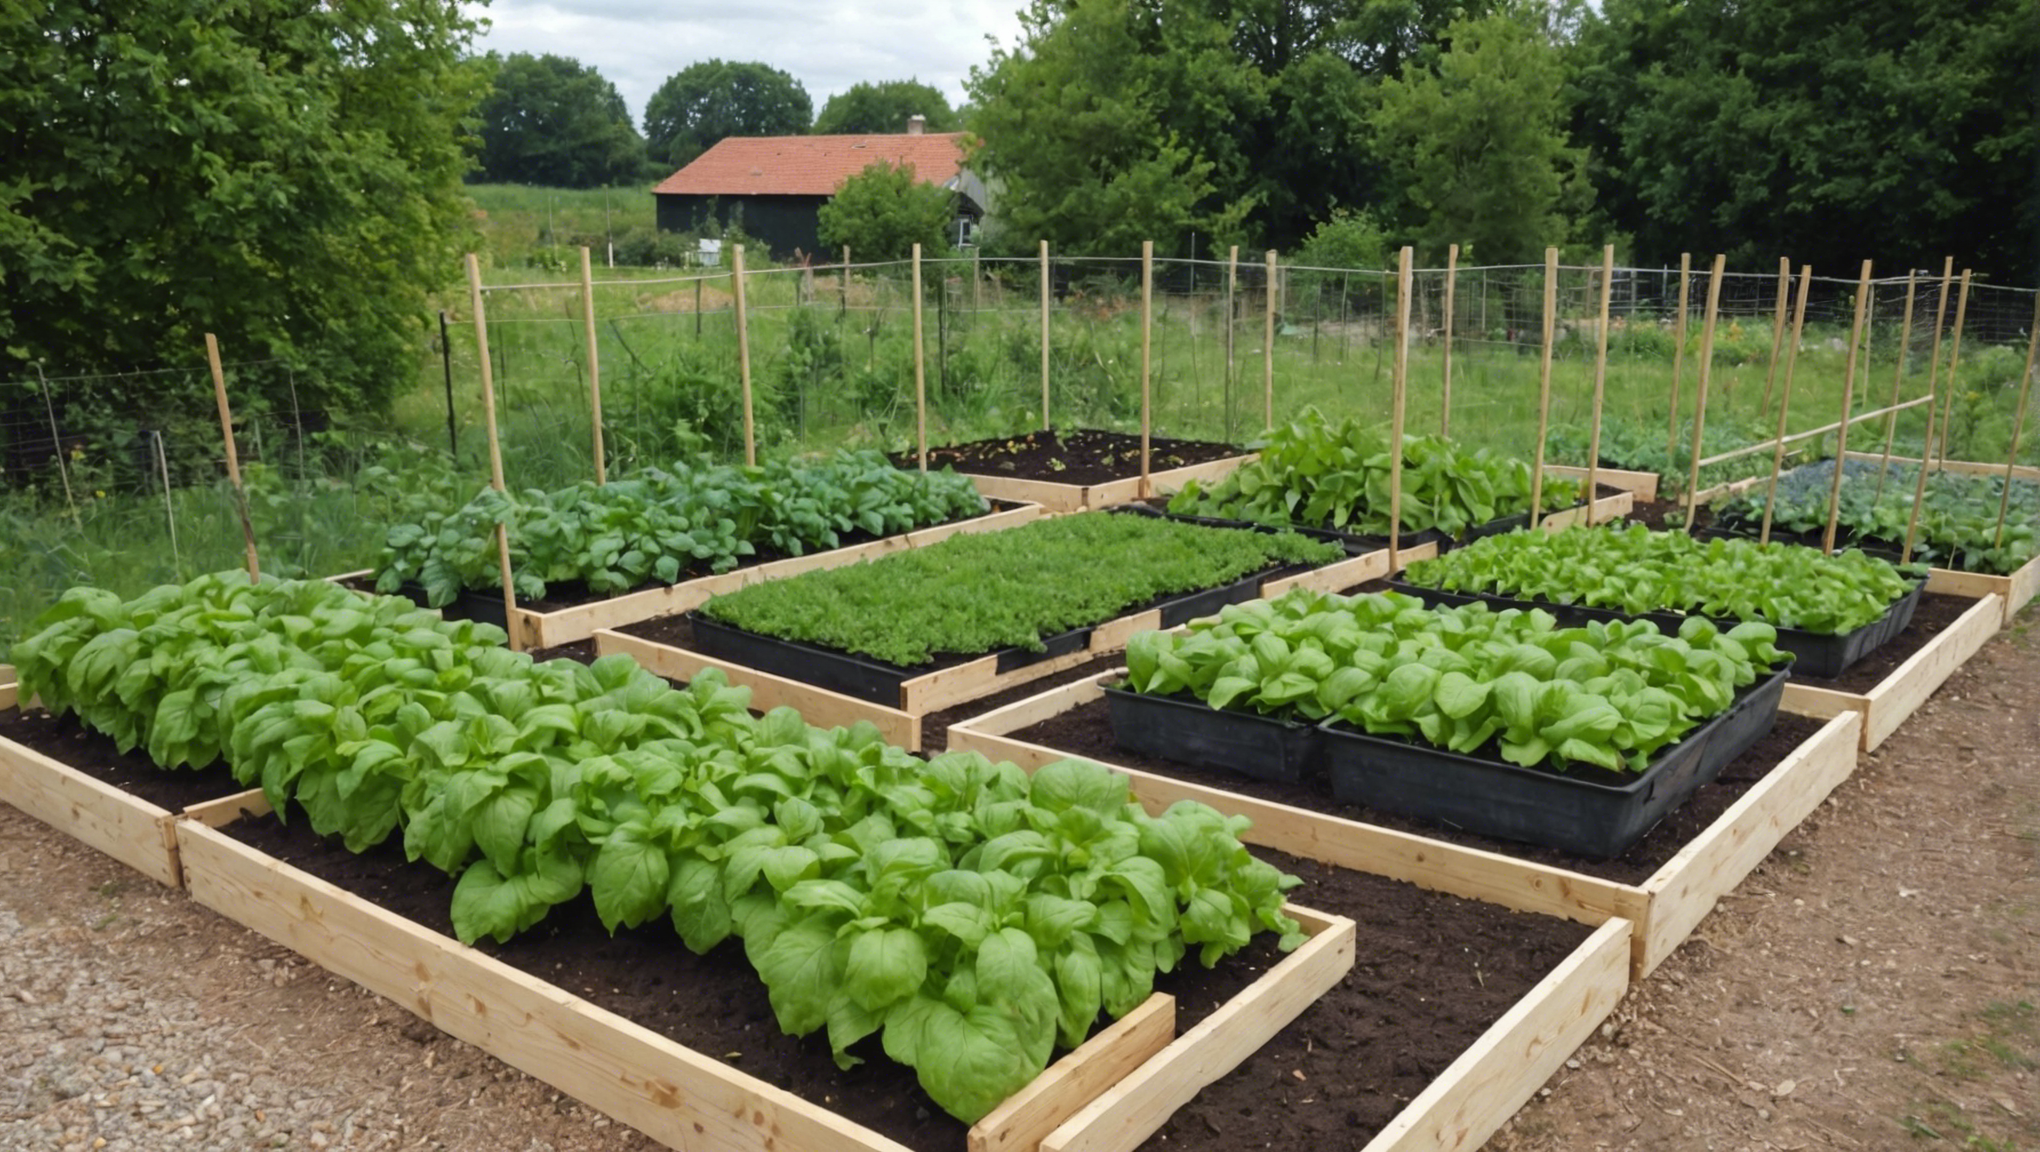 découvrez la méthode de permaculture lasagne et apprenez comment l'appliquer dans votre jardin pour créer un écosystème durable et productif.